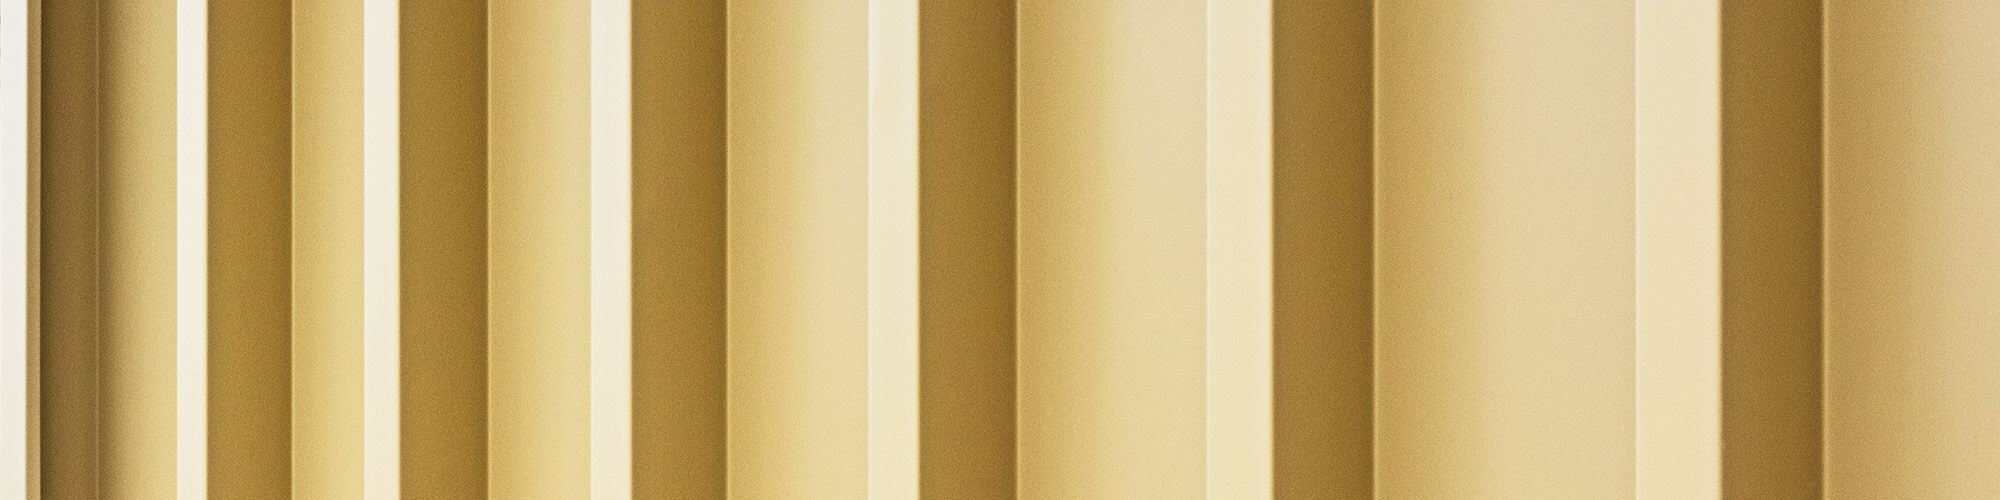 Un détail de la façade Prefalz lignée, beige savane, qui possède un rayonnement particulier.